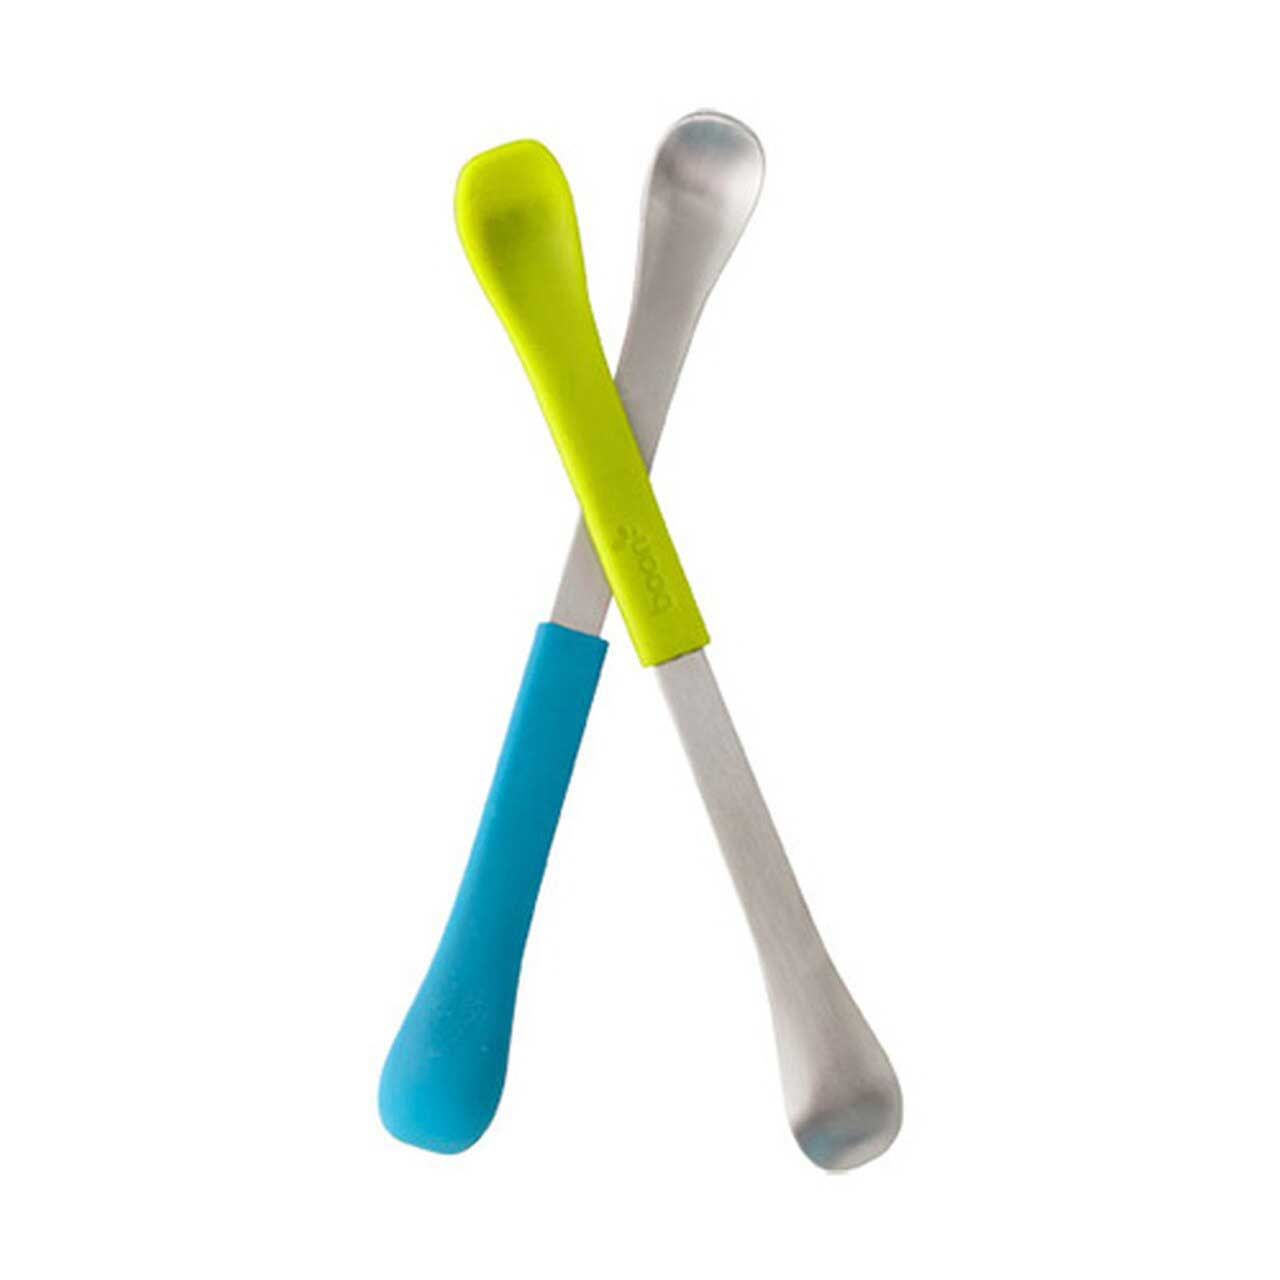 Boon Swap Feeding Spoon 2 In 1 (Blue-Green) - 10150 - 1